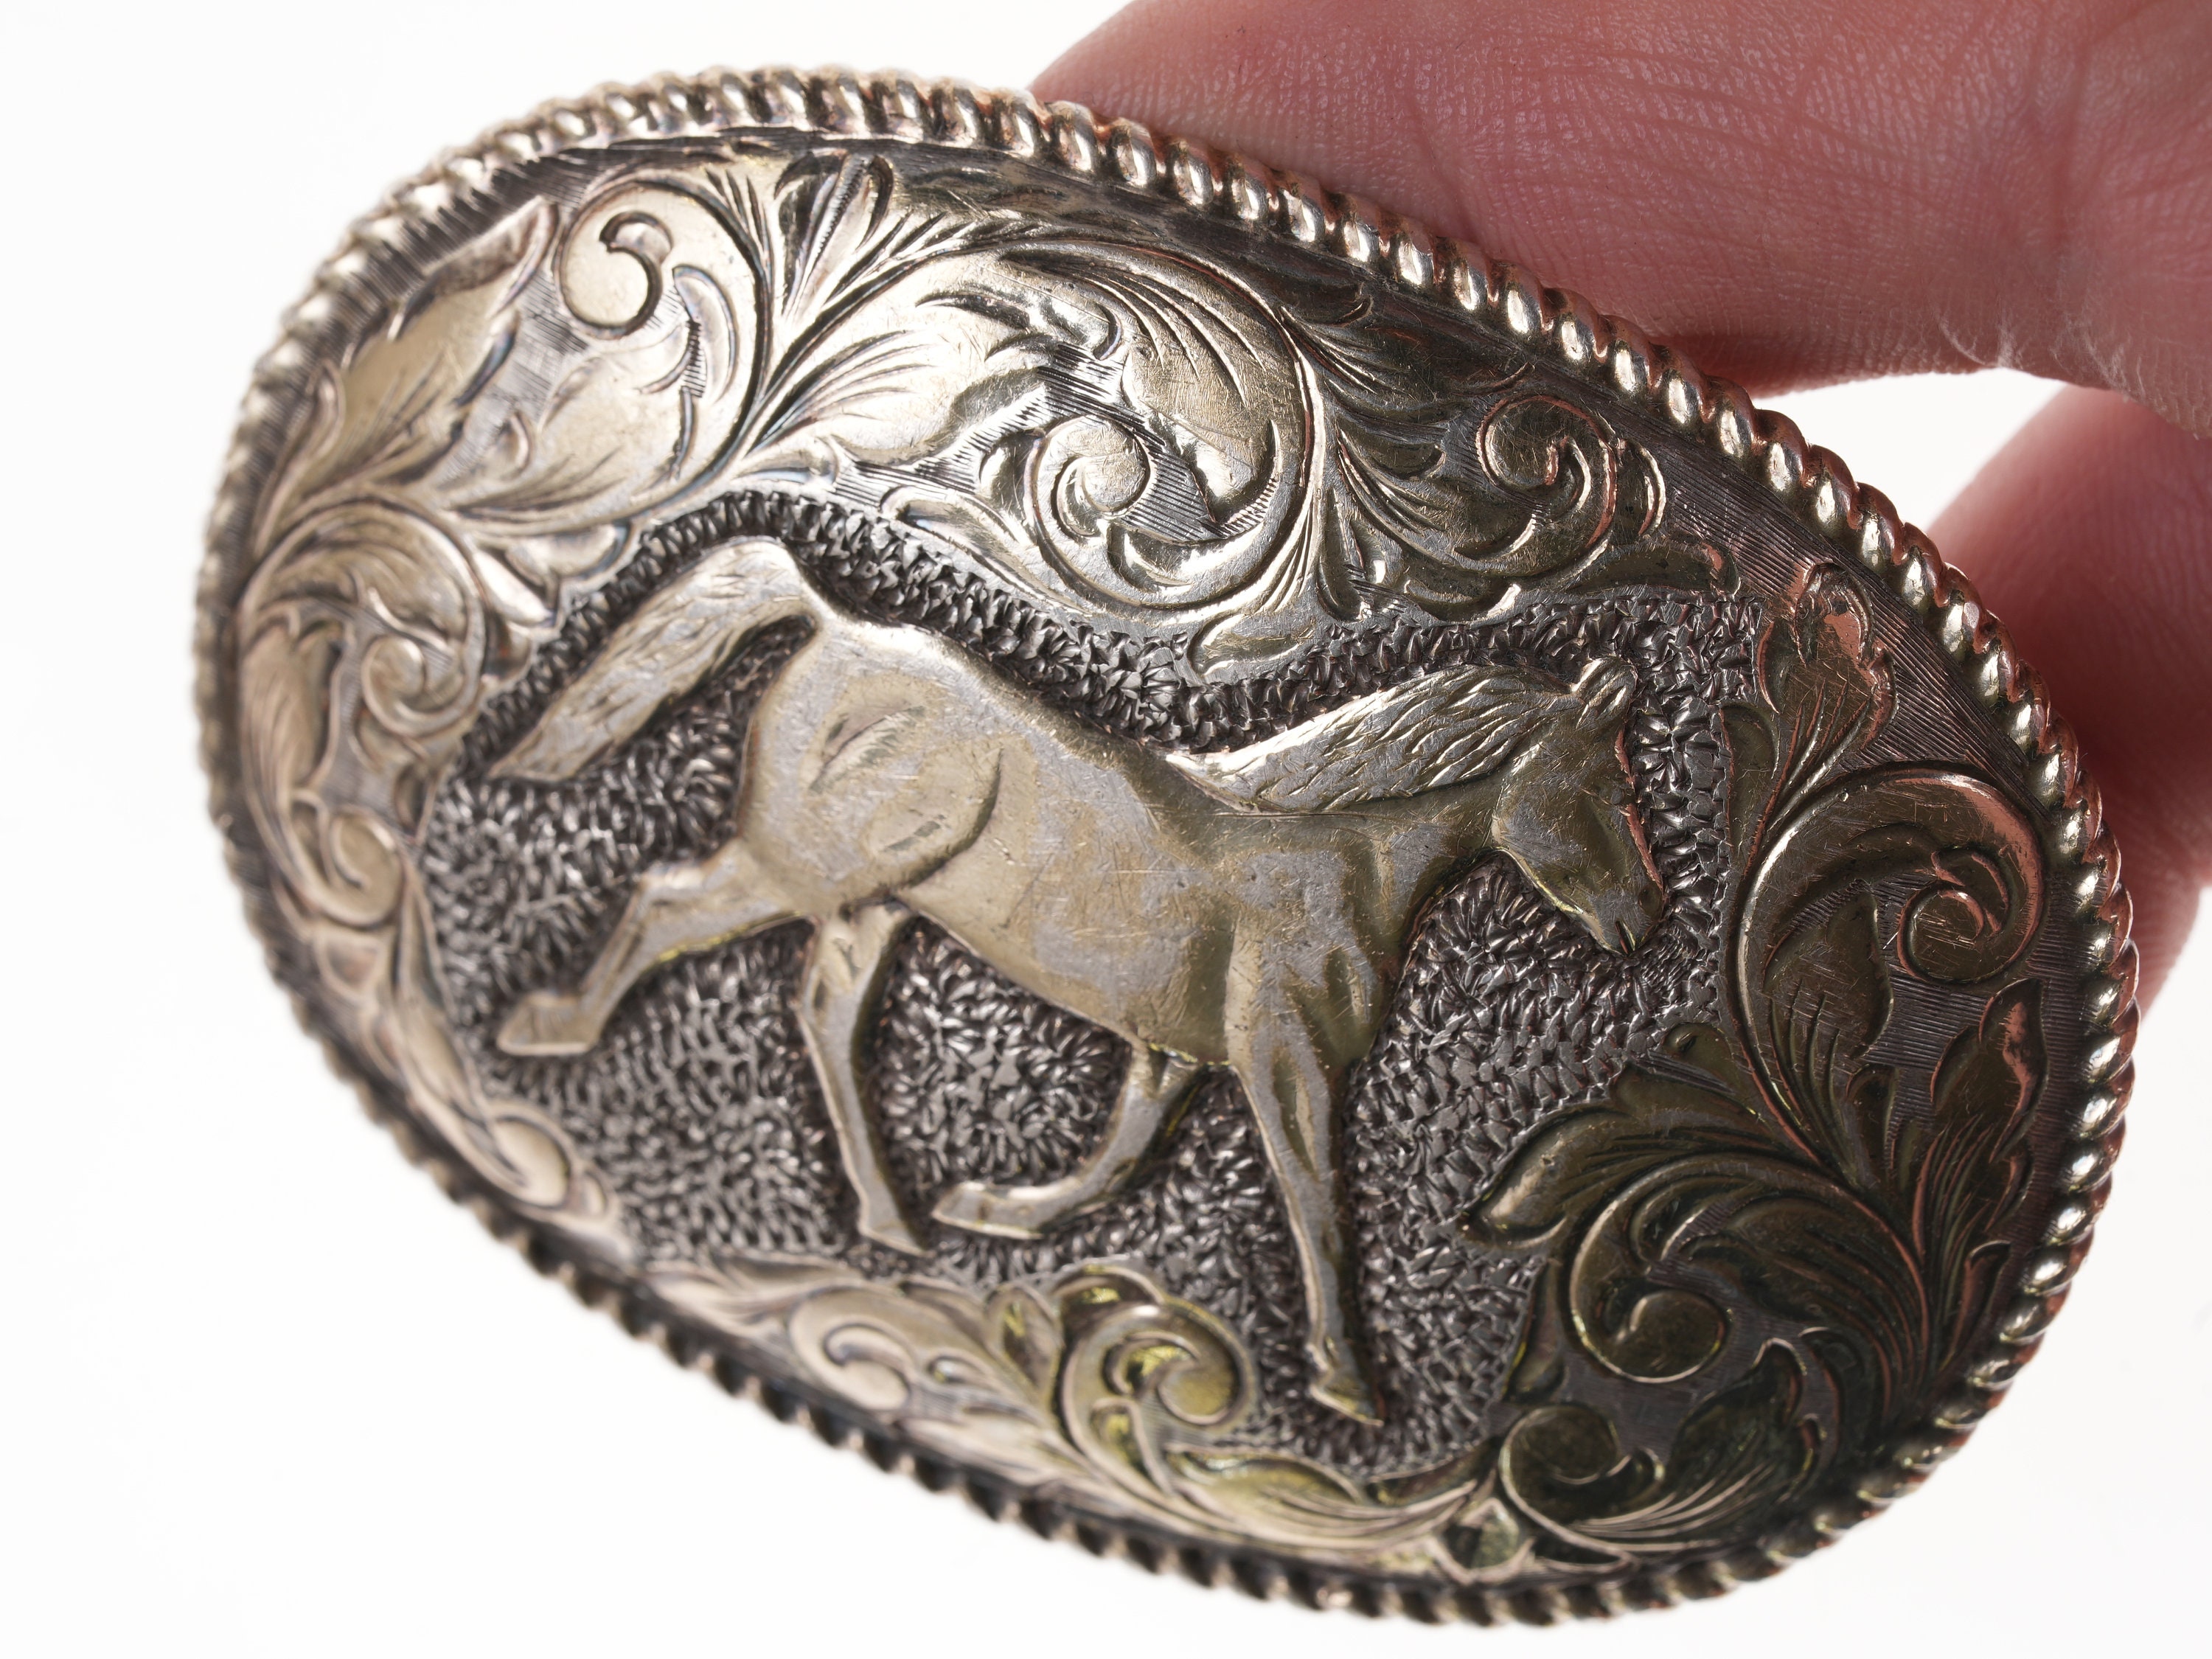 CRUMRINE vintage Belt Buckle 22 K gold on sterling silver. 